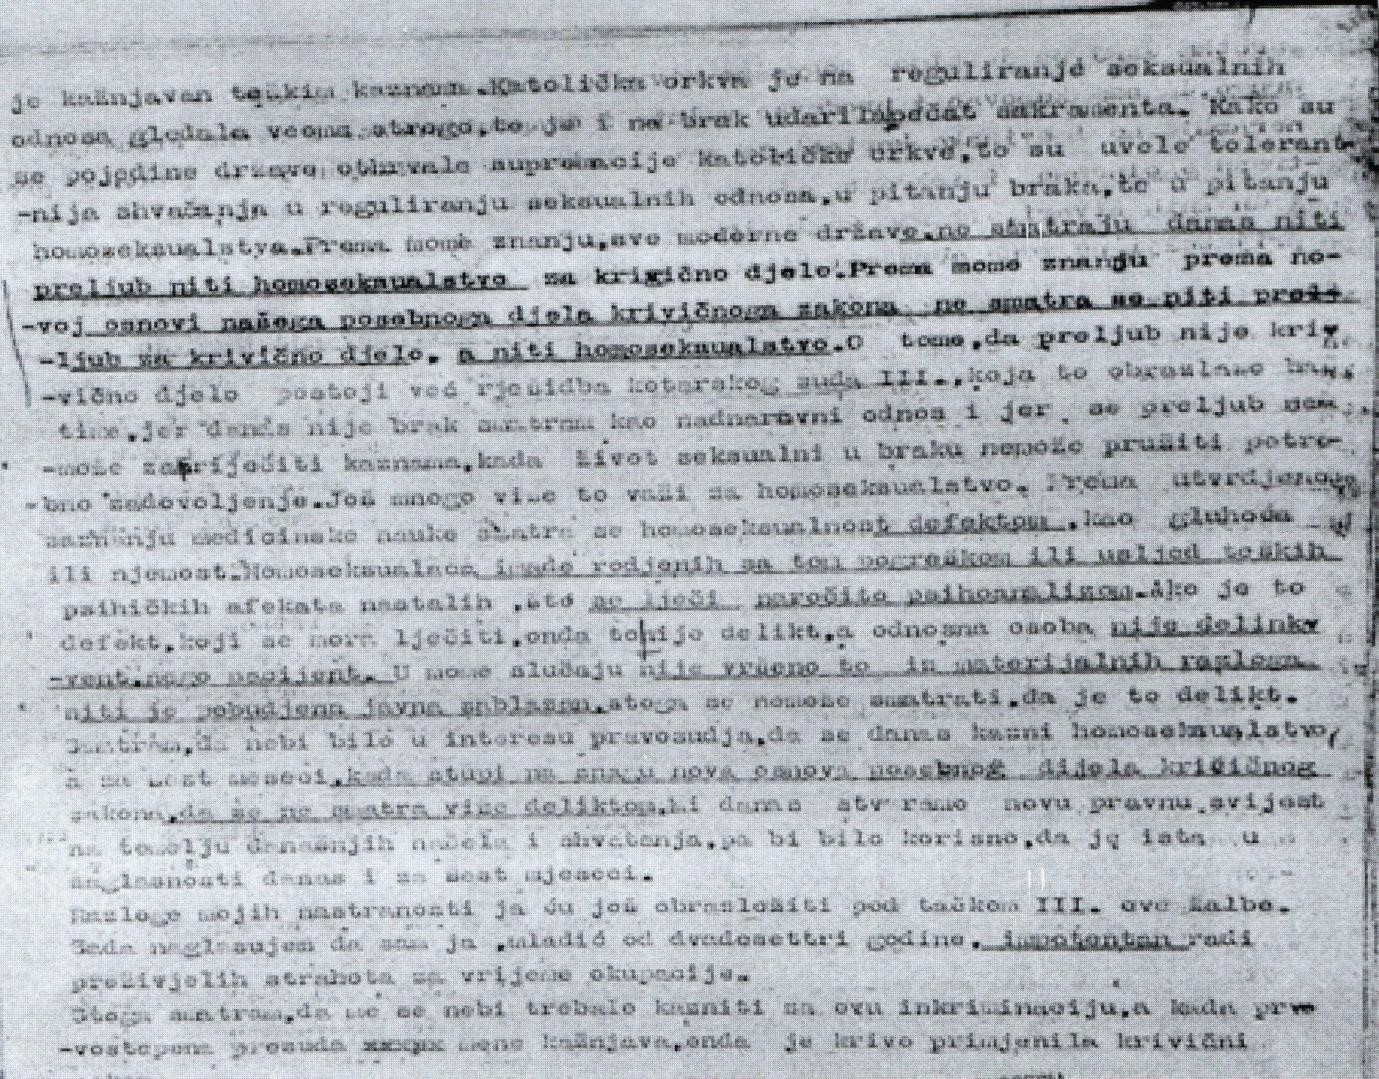 Žalba Branka Vujaklije, 23-godišnjega studenta, na presudu suda u Zagrebu za njegovo homoseksualno ponašanje, napisana u zatvoru krajem prosinca 1949.